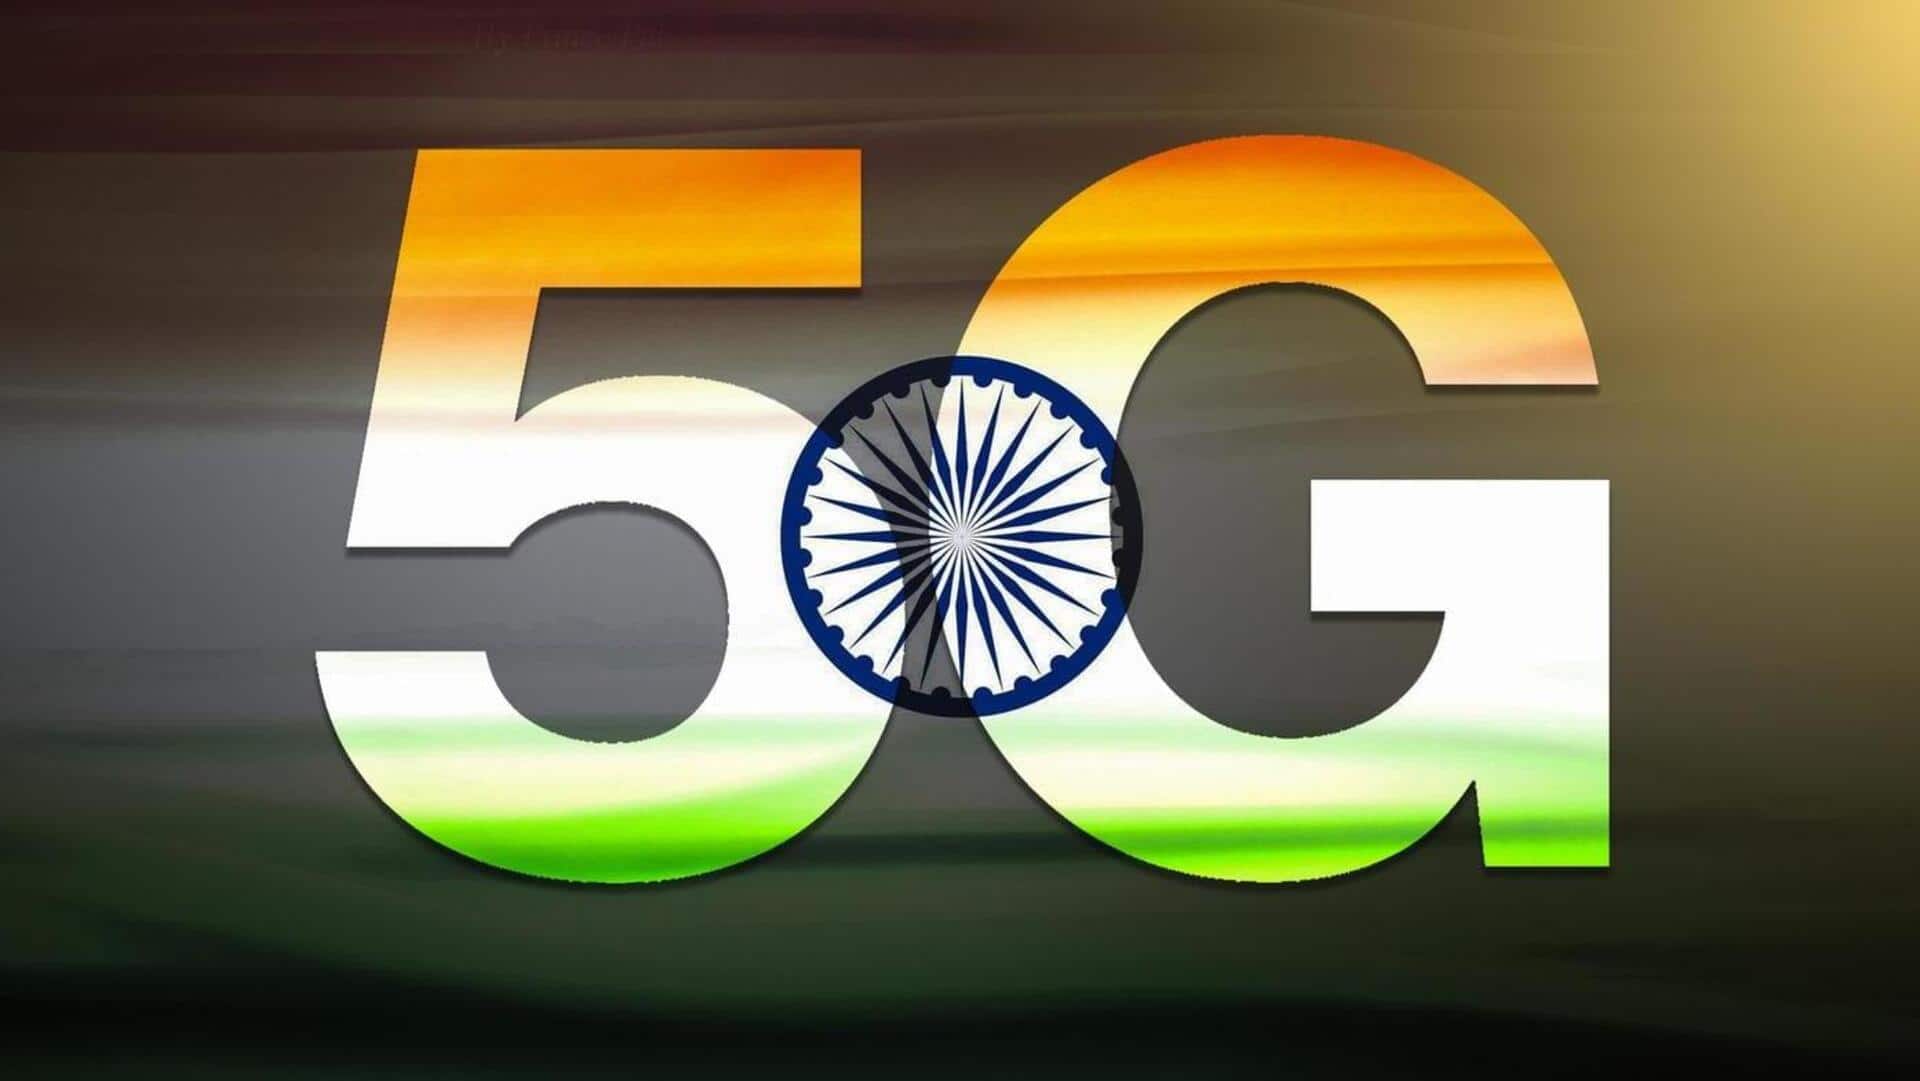 गंगोत्री में शुरू हुई 5G सर्विस, देश में 2 लाख तक पहुंची कुल साइट्स की संख्या 